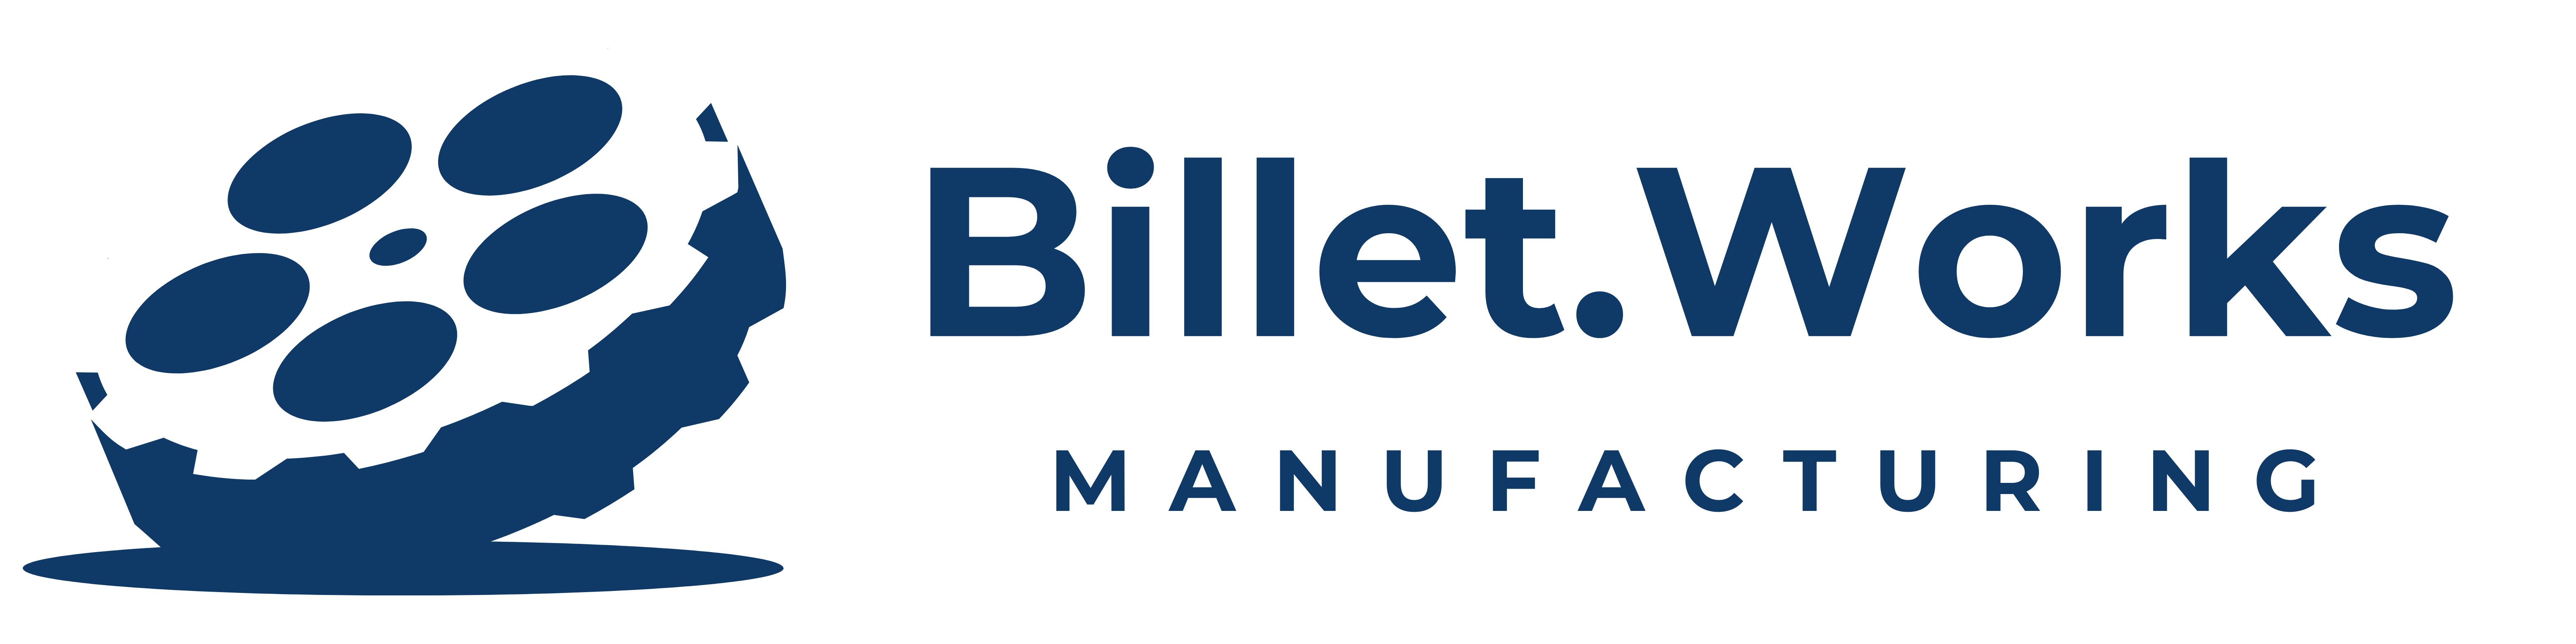 Billet.Works Manufacturing